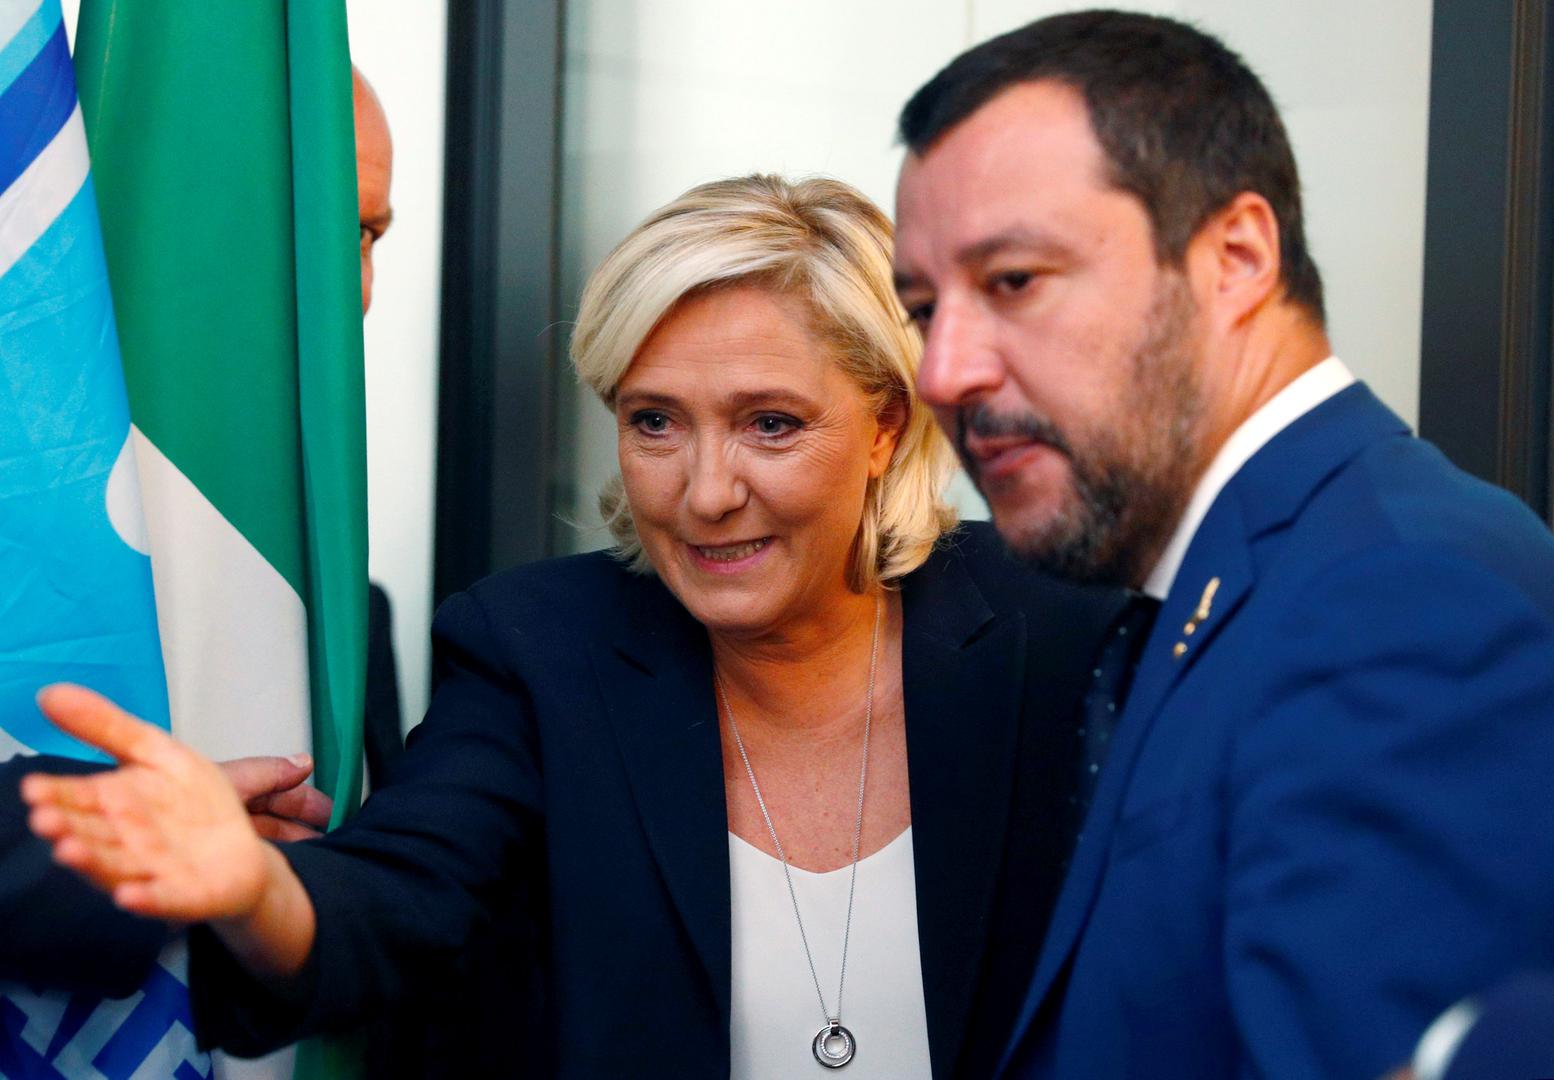 Populistički lideri “Postoji Alternativa za Europu i mi ju gradimo”, tvitala je francuska desničarka Marine Le Pen uoči susreta s Matteom Salvinijem